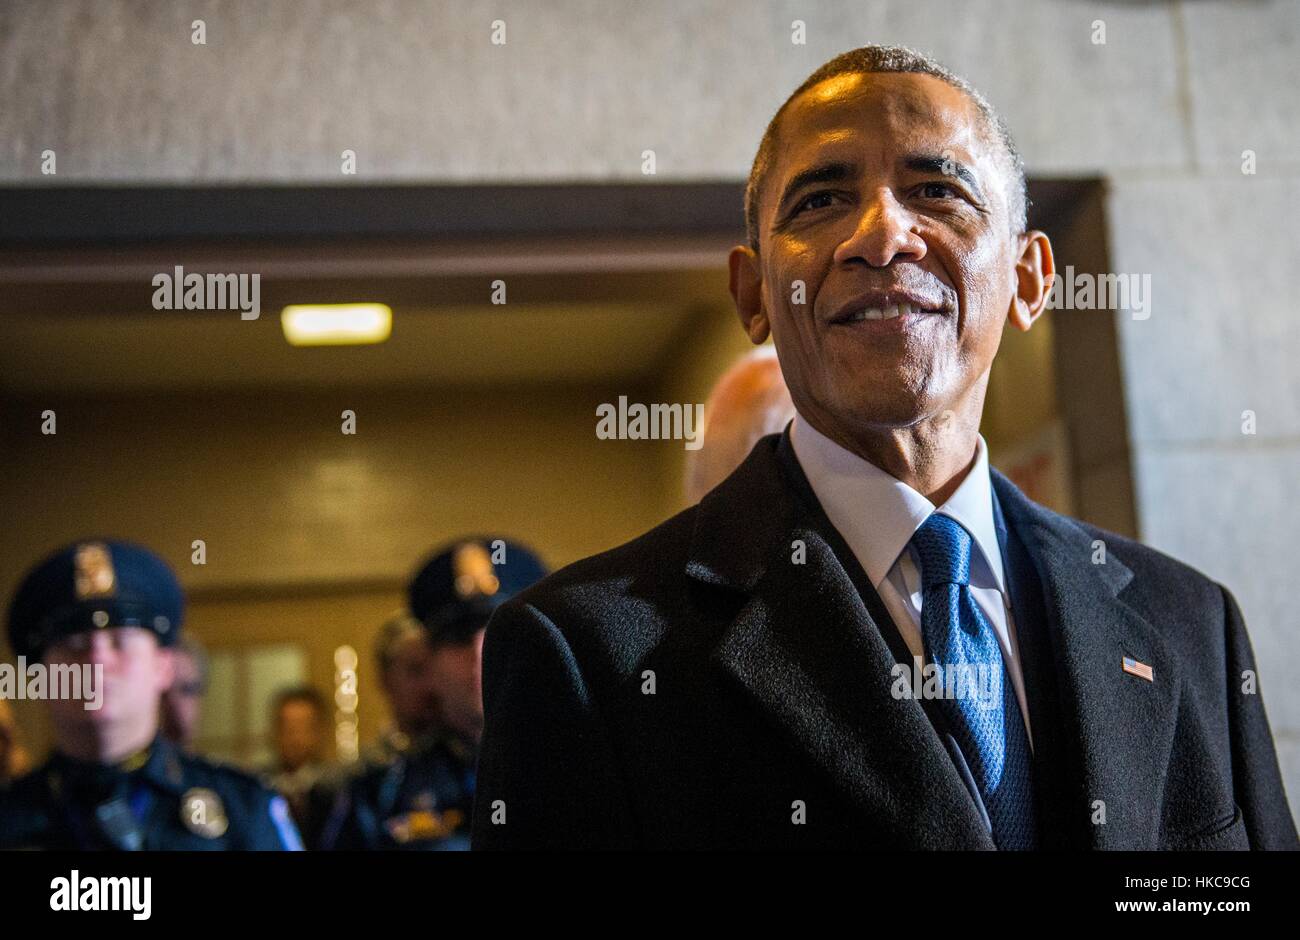 US-Präsident Barack Obama wartet darauf, zum letzten Mal als Präsident bei der 58. Presidential Inauguration 20. Januar 2017 in Washington, D.C. bekannt gegeben. Stockfoto